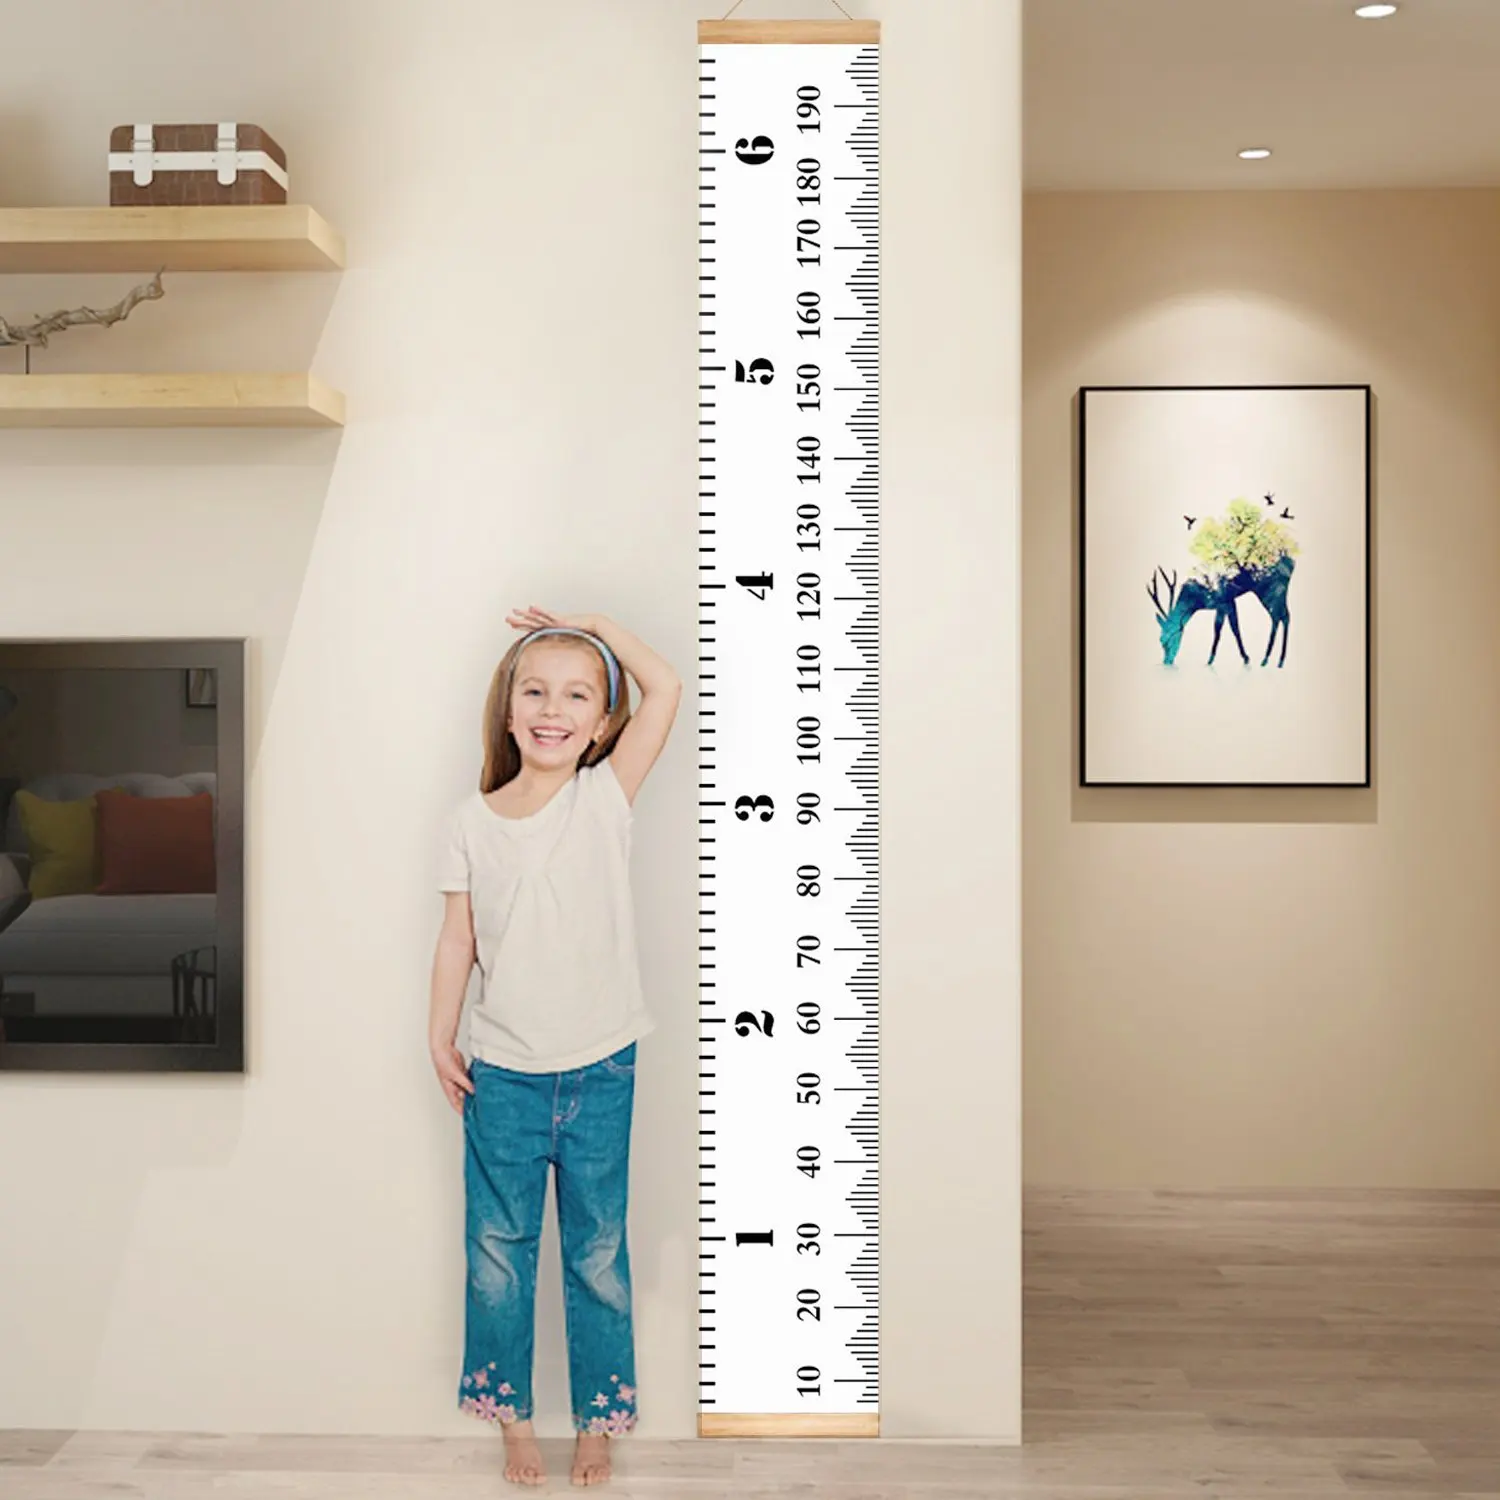 Child height. Линейка для измерения роста. Измеритель роста для детей. Метр для измерения роста. Ростомер до 1,5 метров.